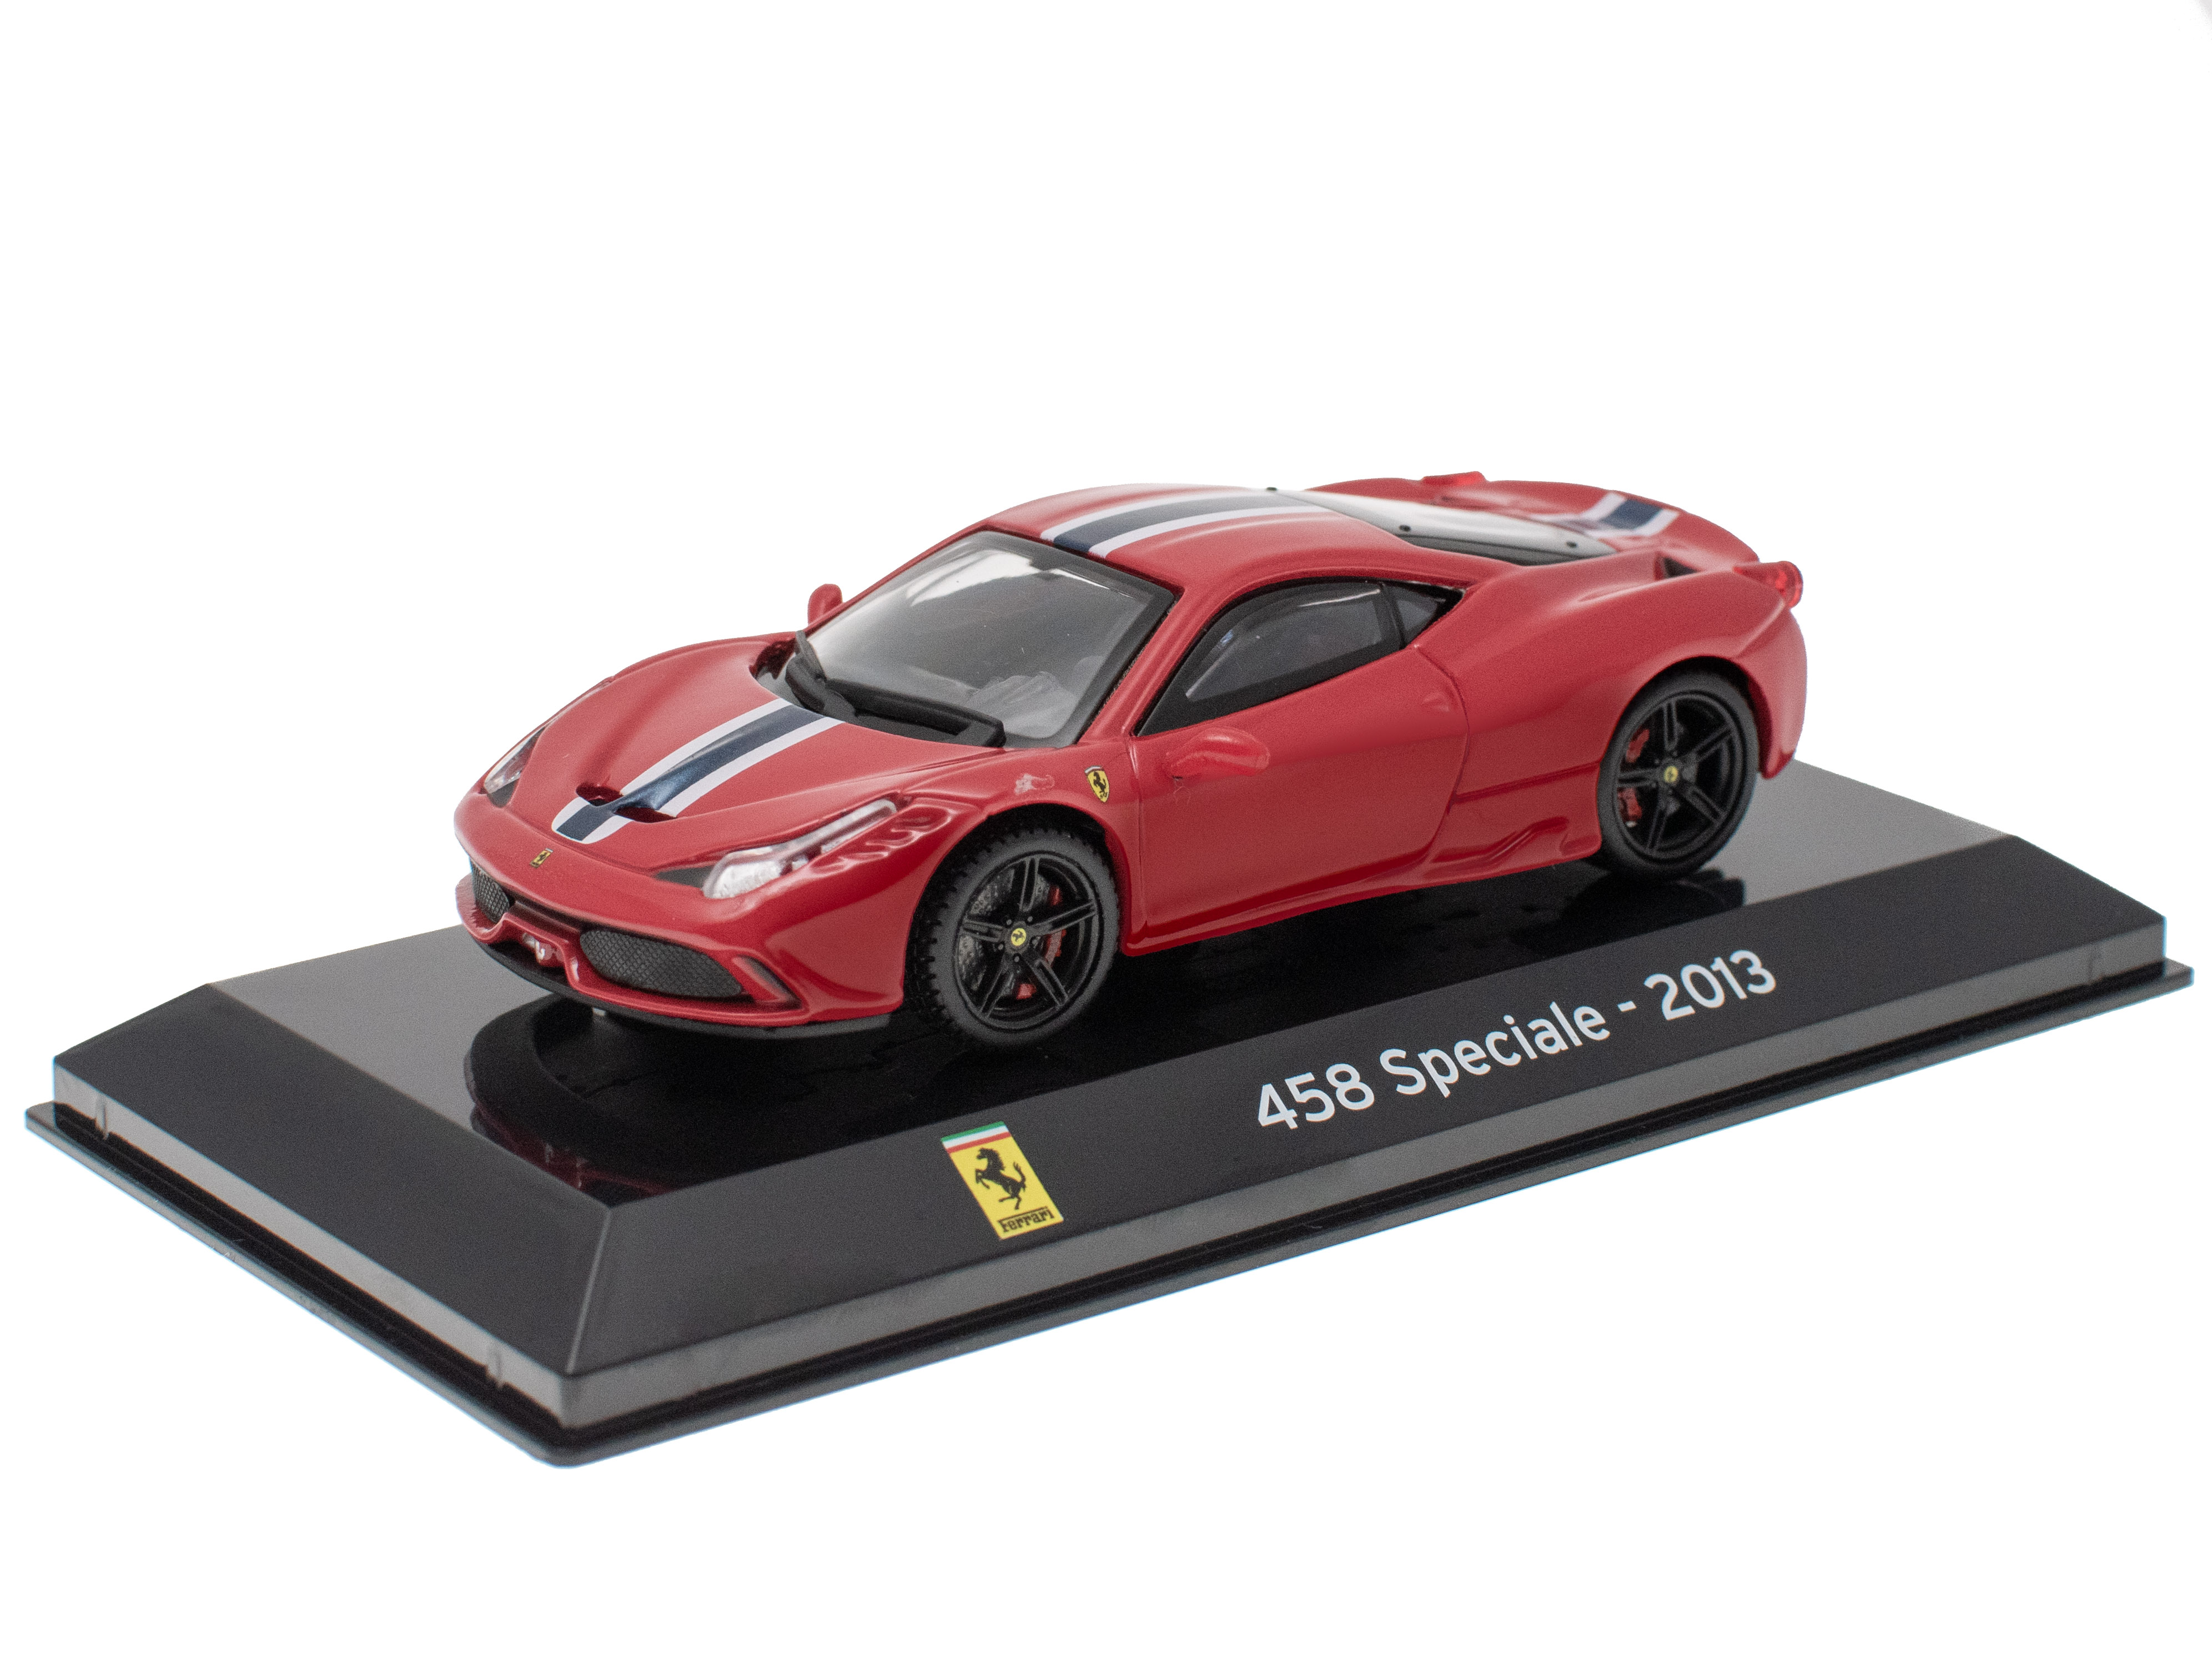 Ferrari 458 Speciale - 2013